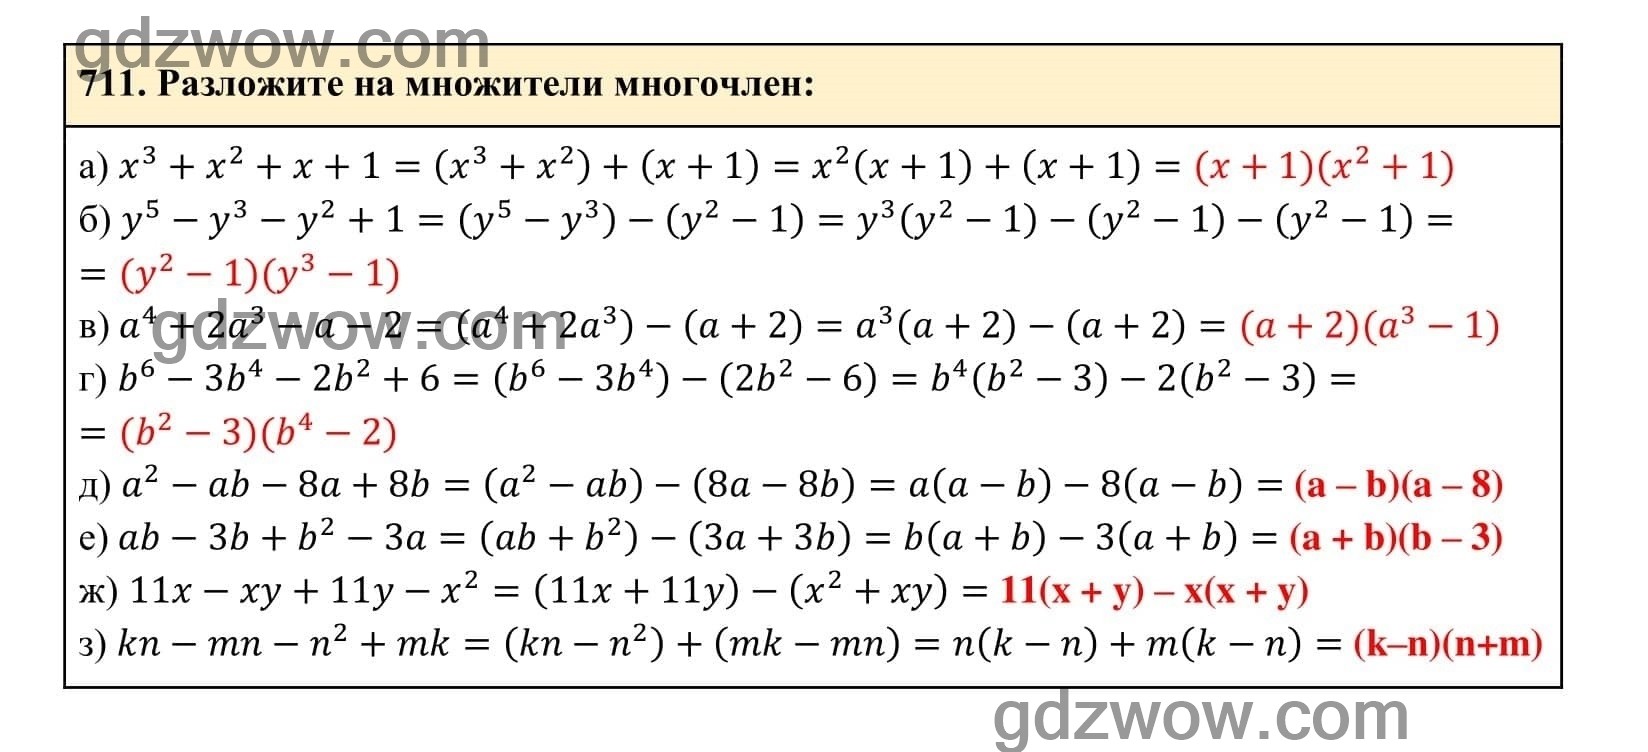 Упражнение 711 - ГДЗ по Алгебре 7 класс Учебник Макарычев (решебник) - GDZwow